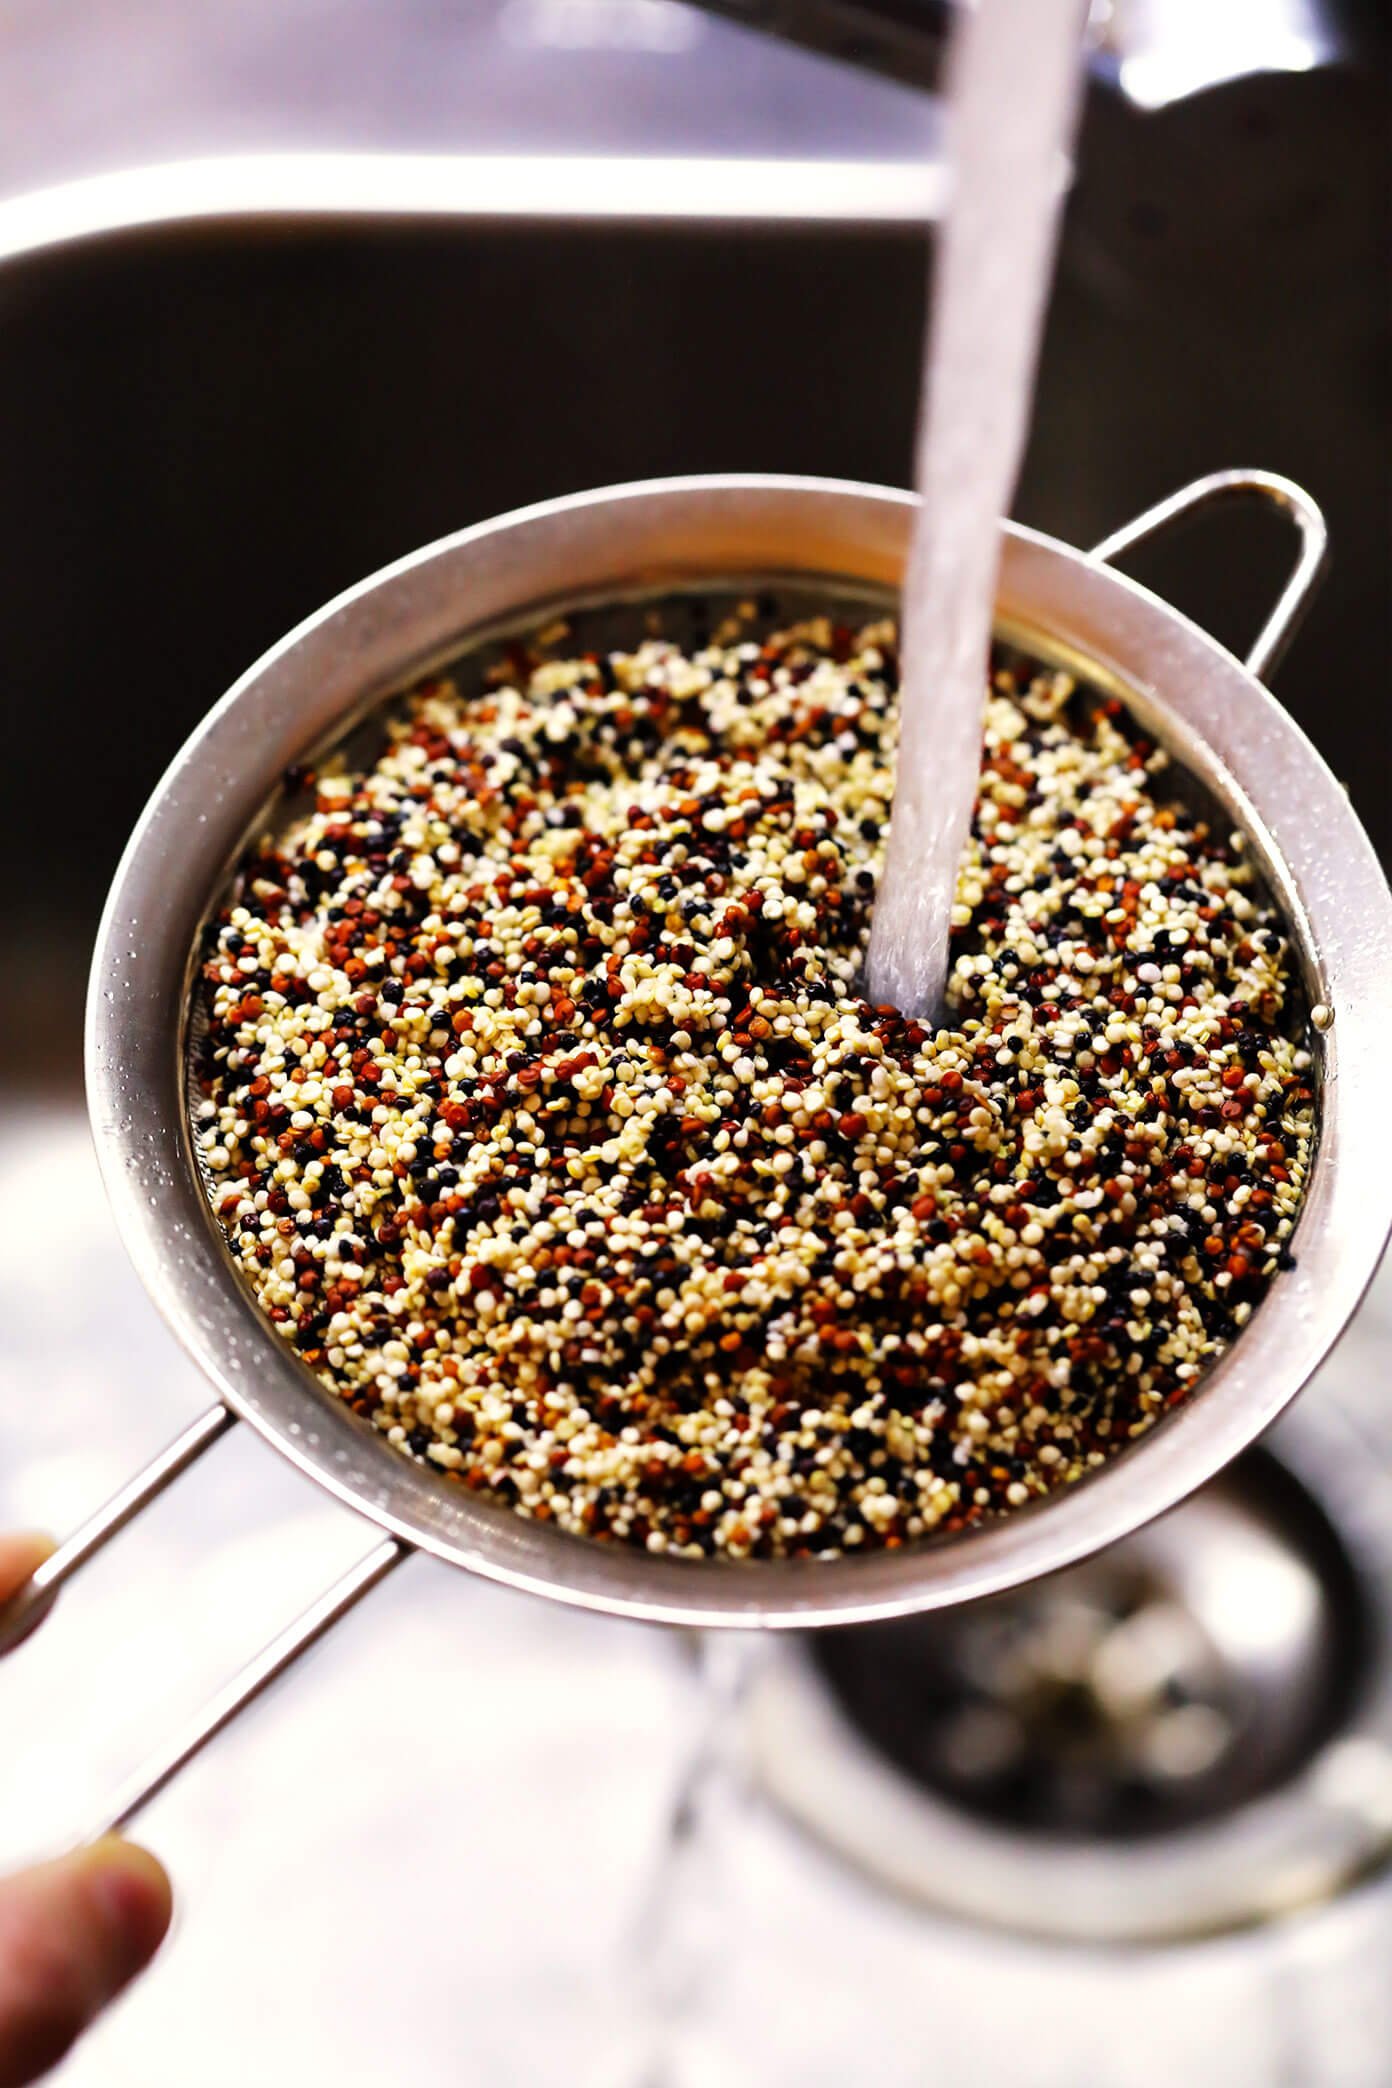 How To Make Quinoa